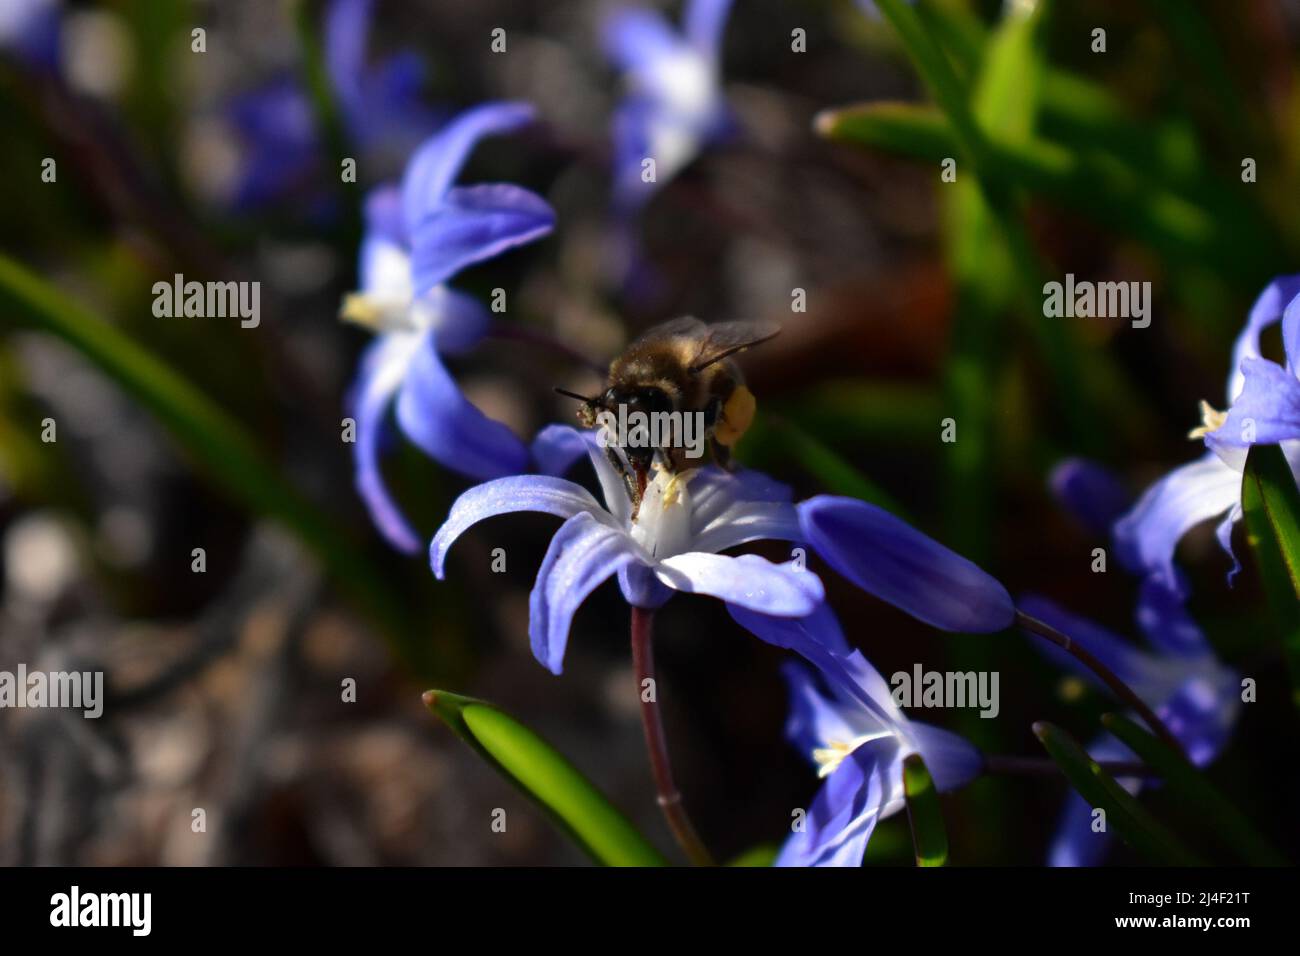 Blüte, Blume, Biene, Bloom, Blossom, Bee, Nektar, Natur, Frühling, Summen, Jahreszeiten, Umweltschutz, Environment, Light and Shadow, Sustainibility Stock Photo